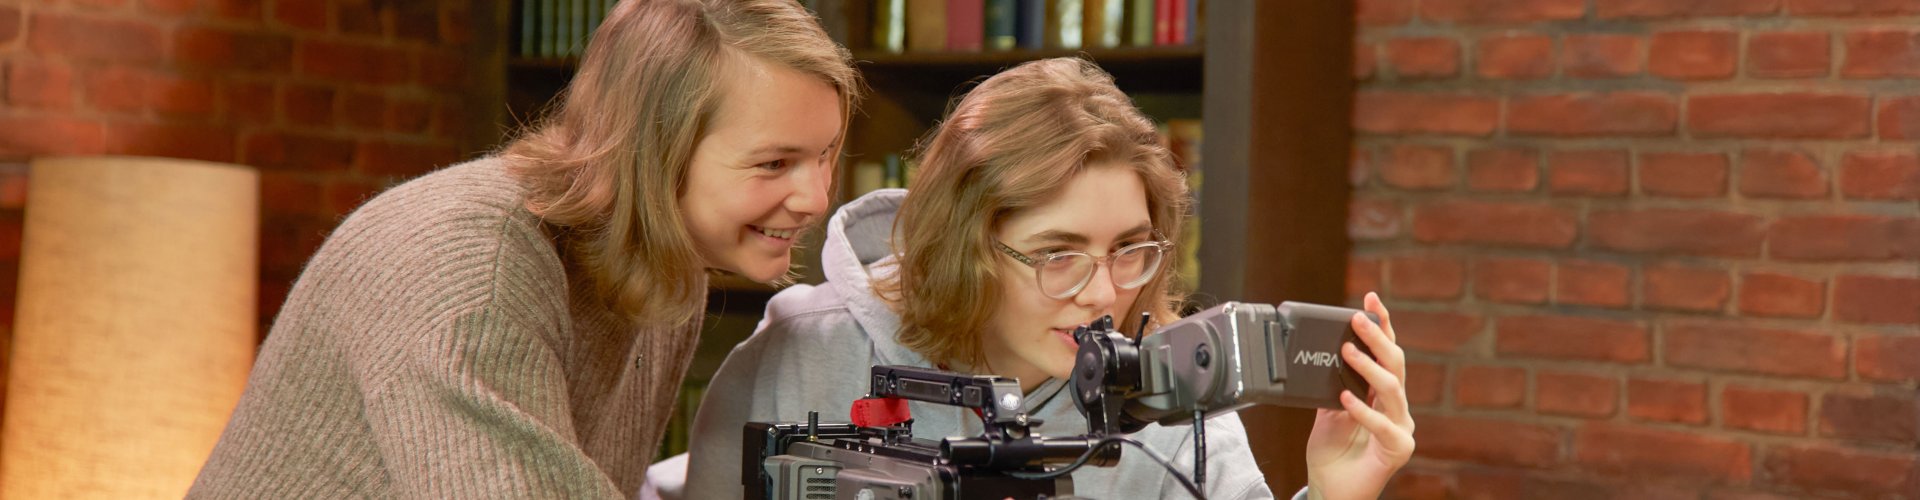 Zwei Studentinnen hinter einer Kamera.